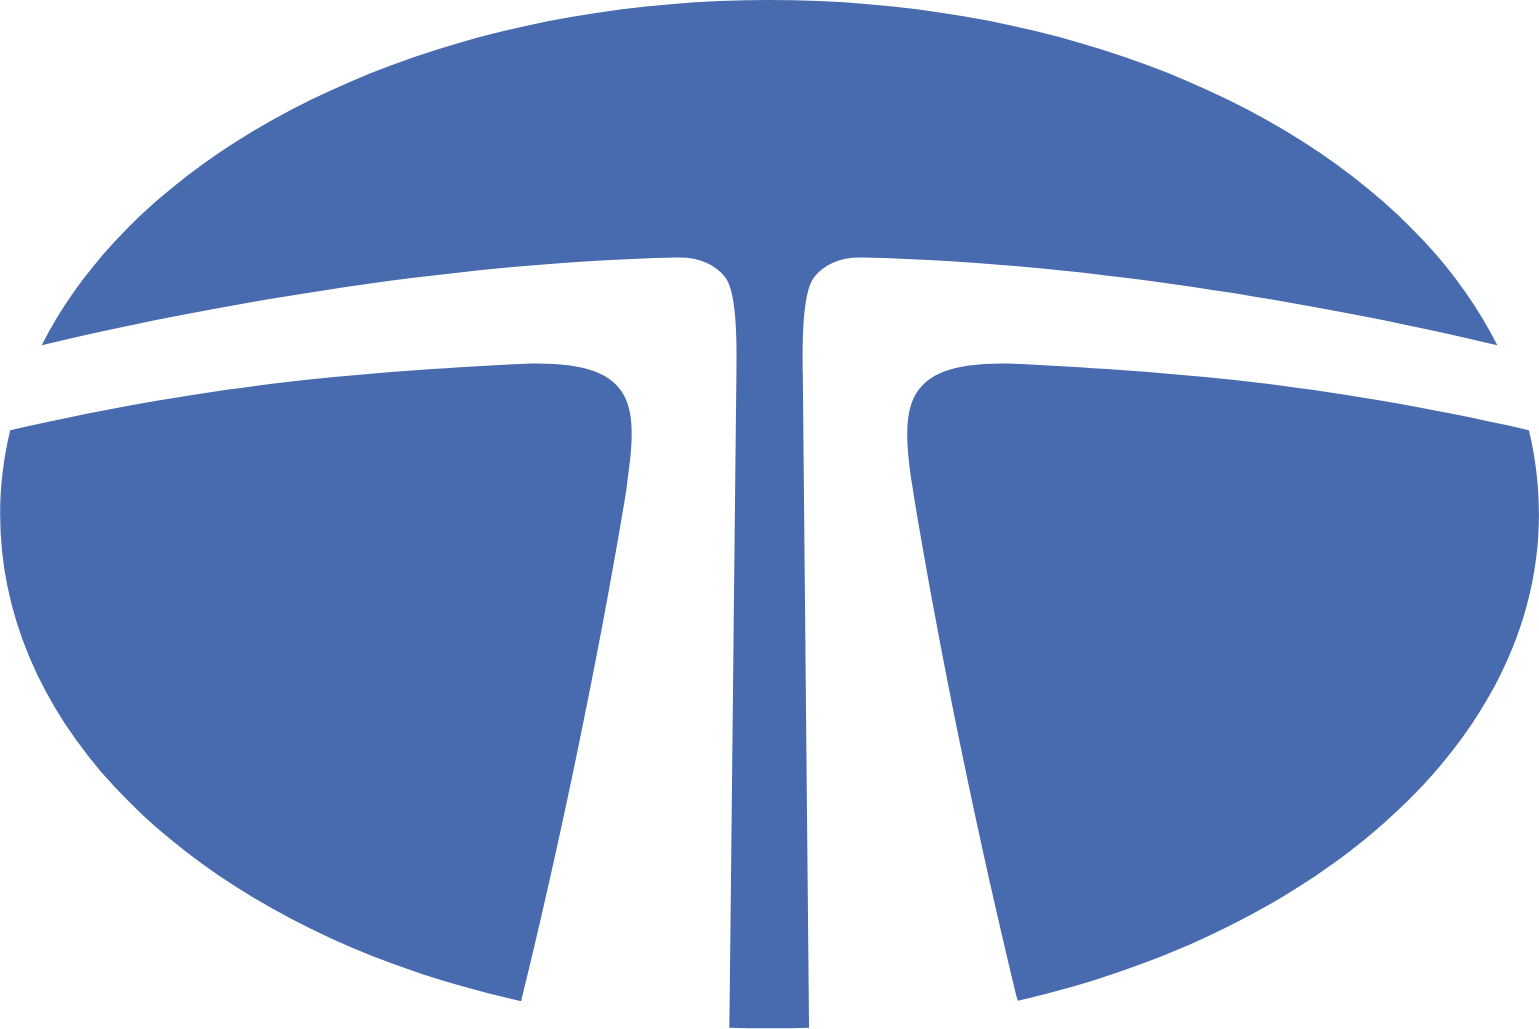 tata motors logo images